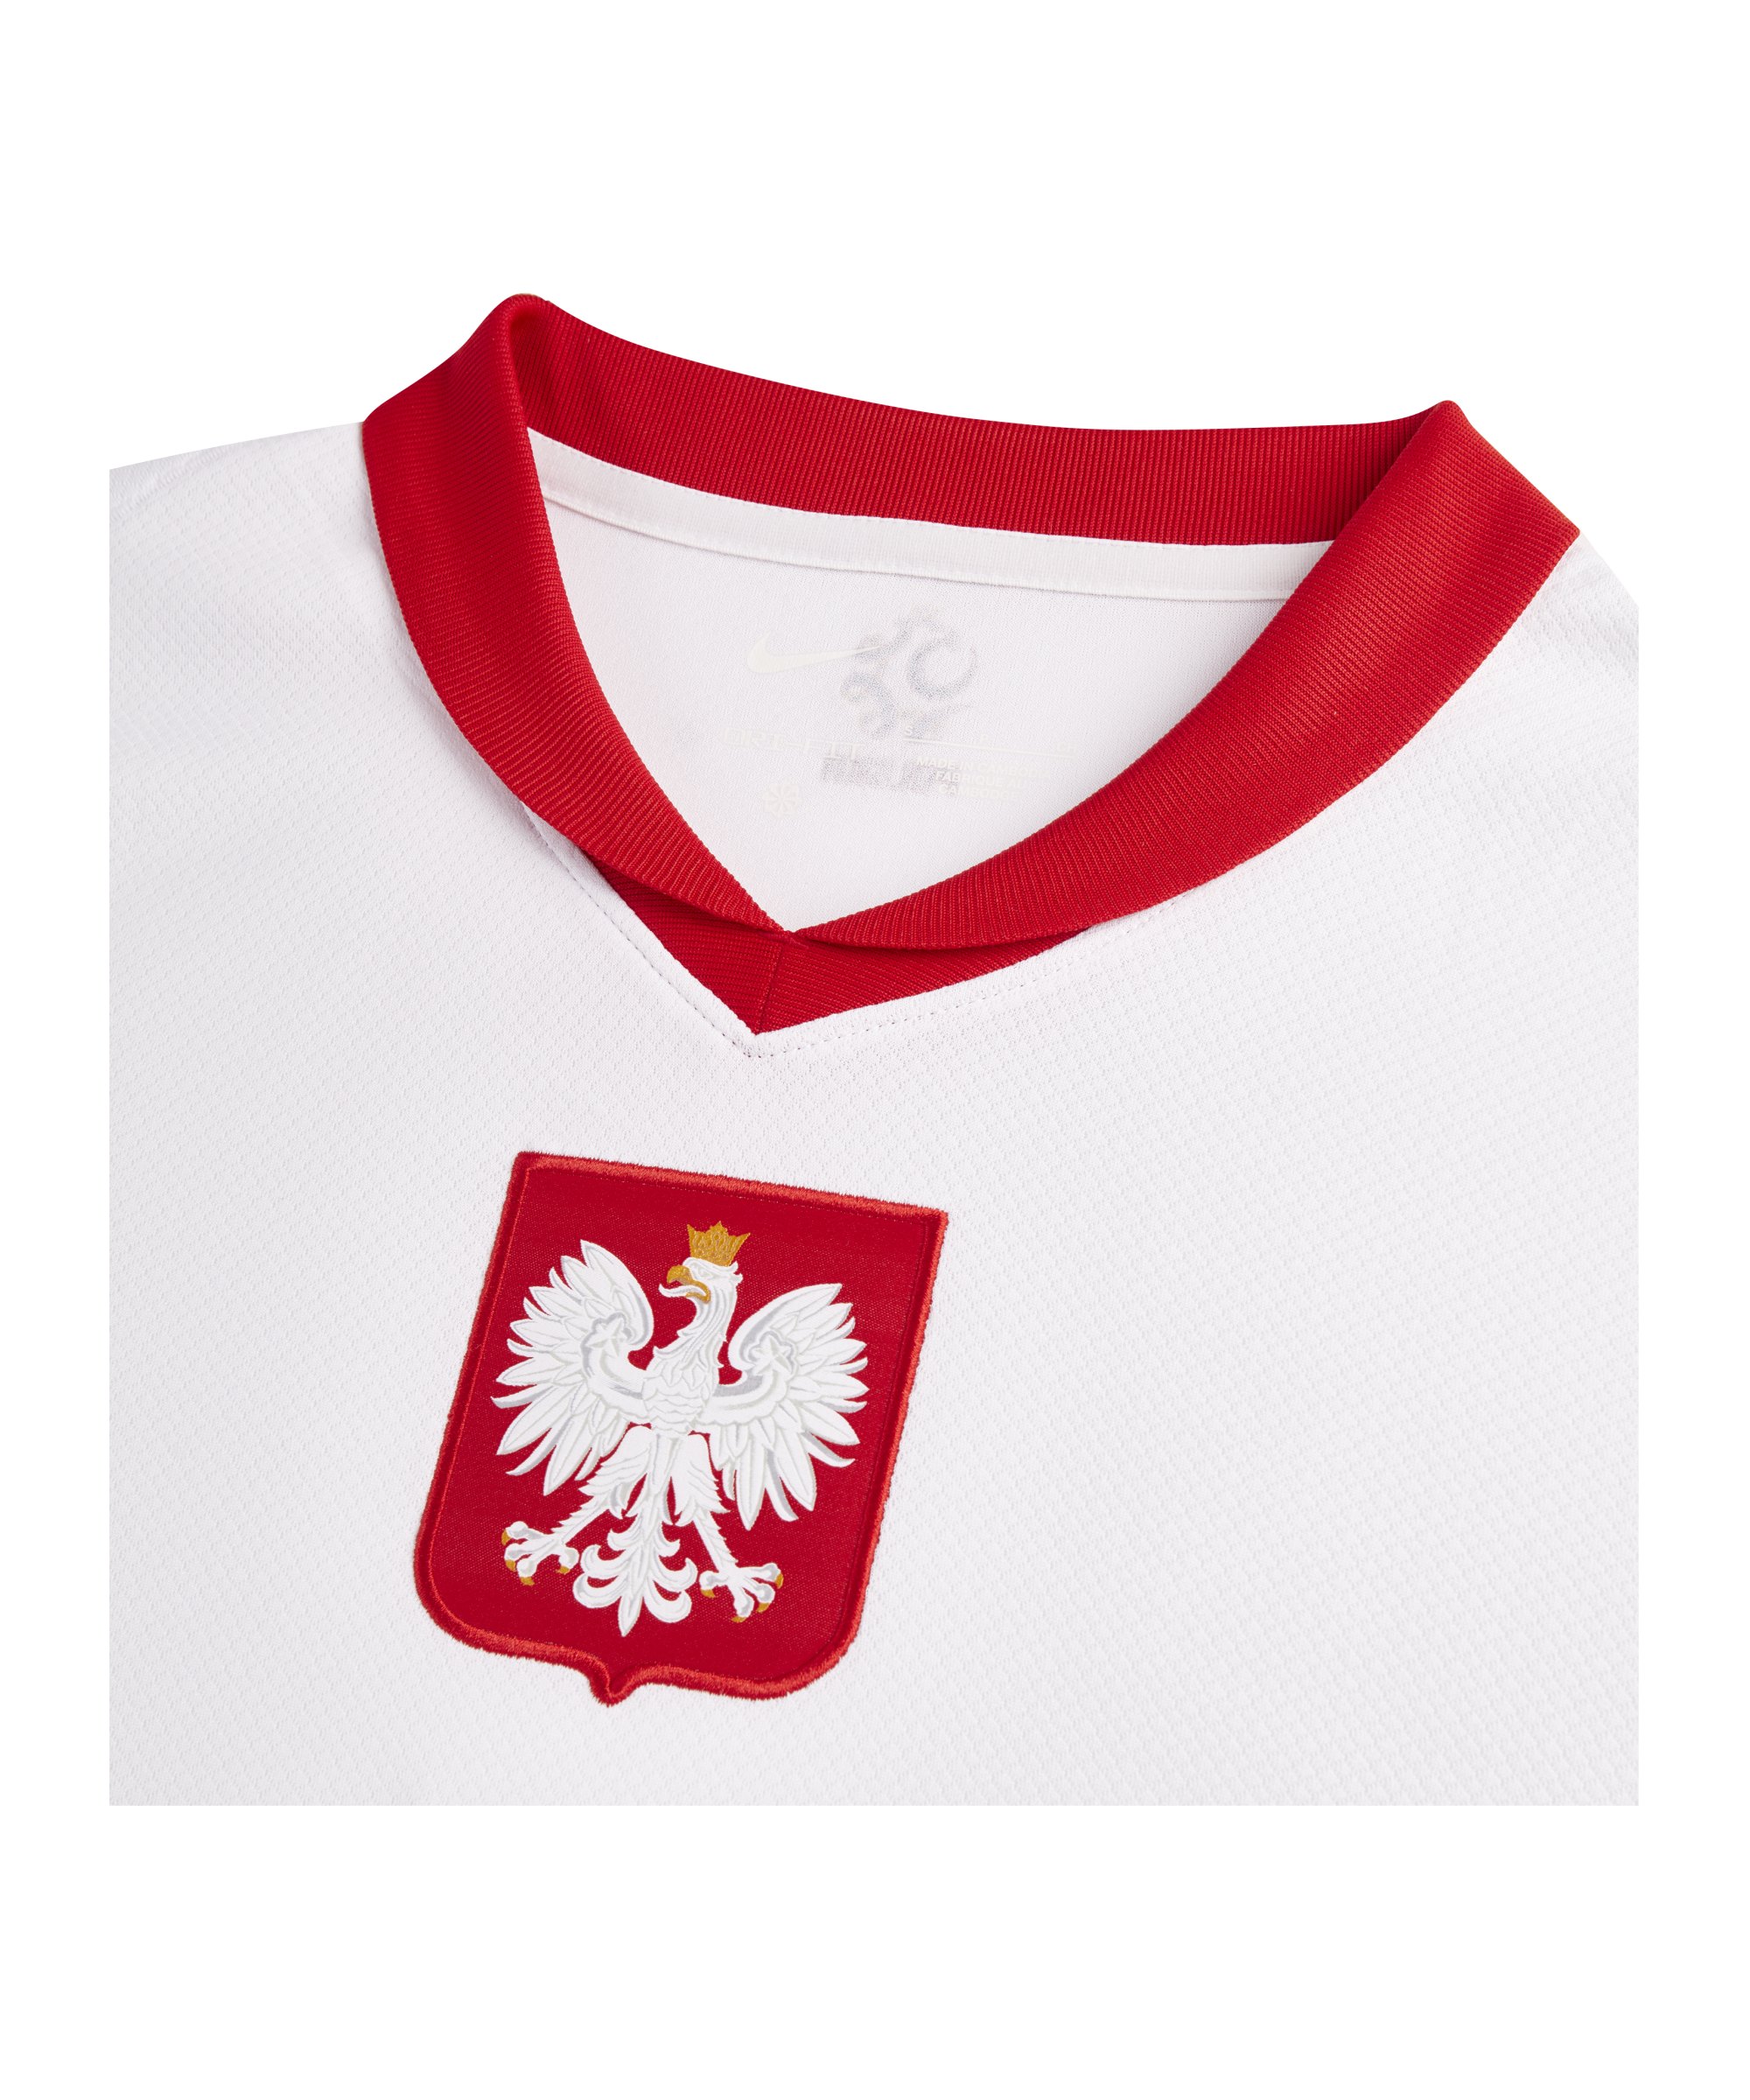 Nike Polen Trikot Home Damen Weiss Rot Rot weiss